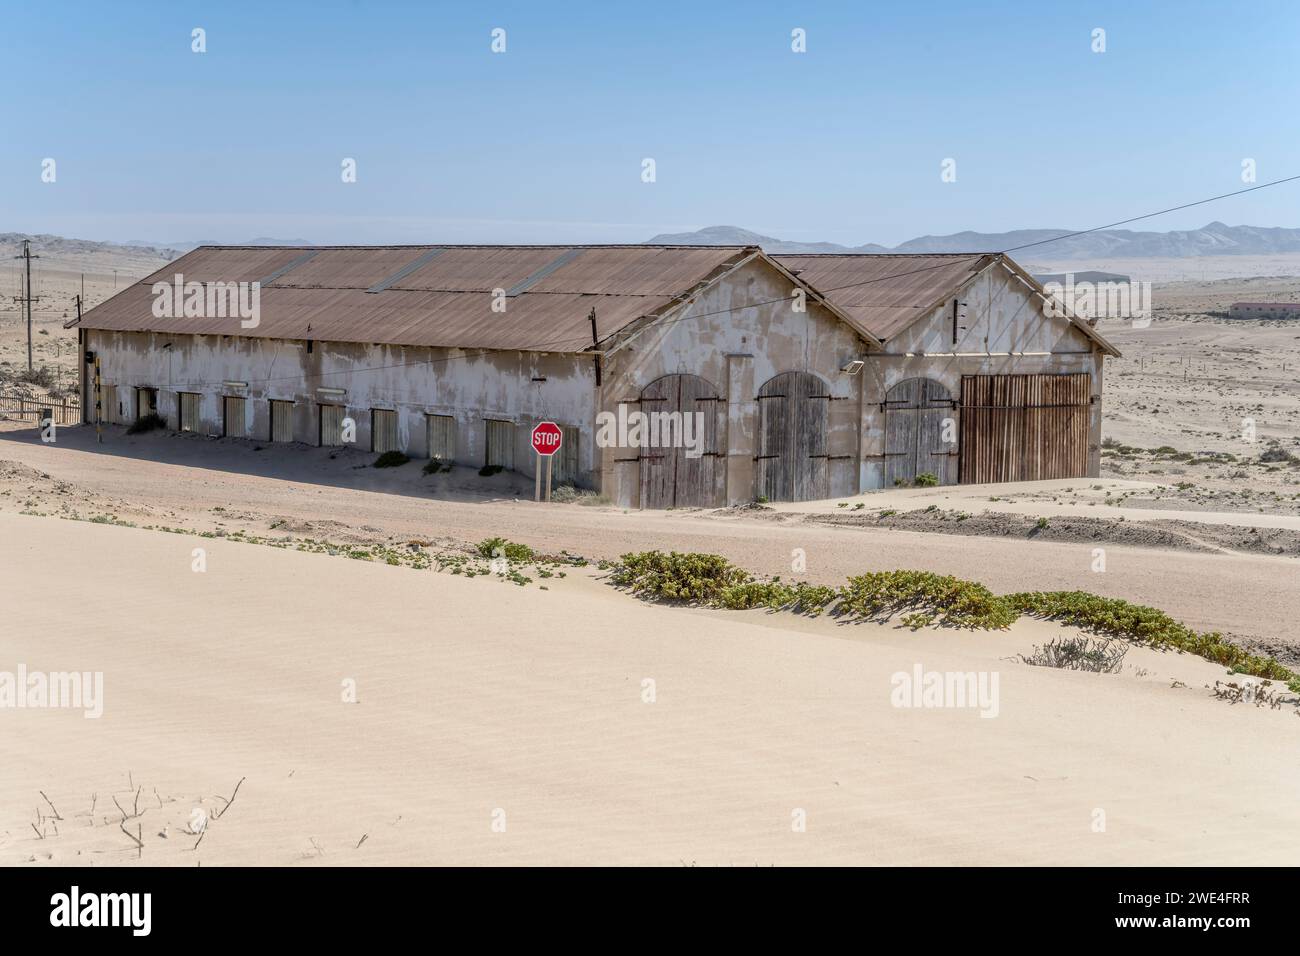 Paesaggio urbano con edifici di magazzini abbandonati sulla sabbia nella città fantasma mineraria nel deserto, girato in tarda primavera a Kolmanskop, Namibia, Africa Foto Stock